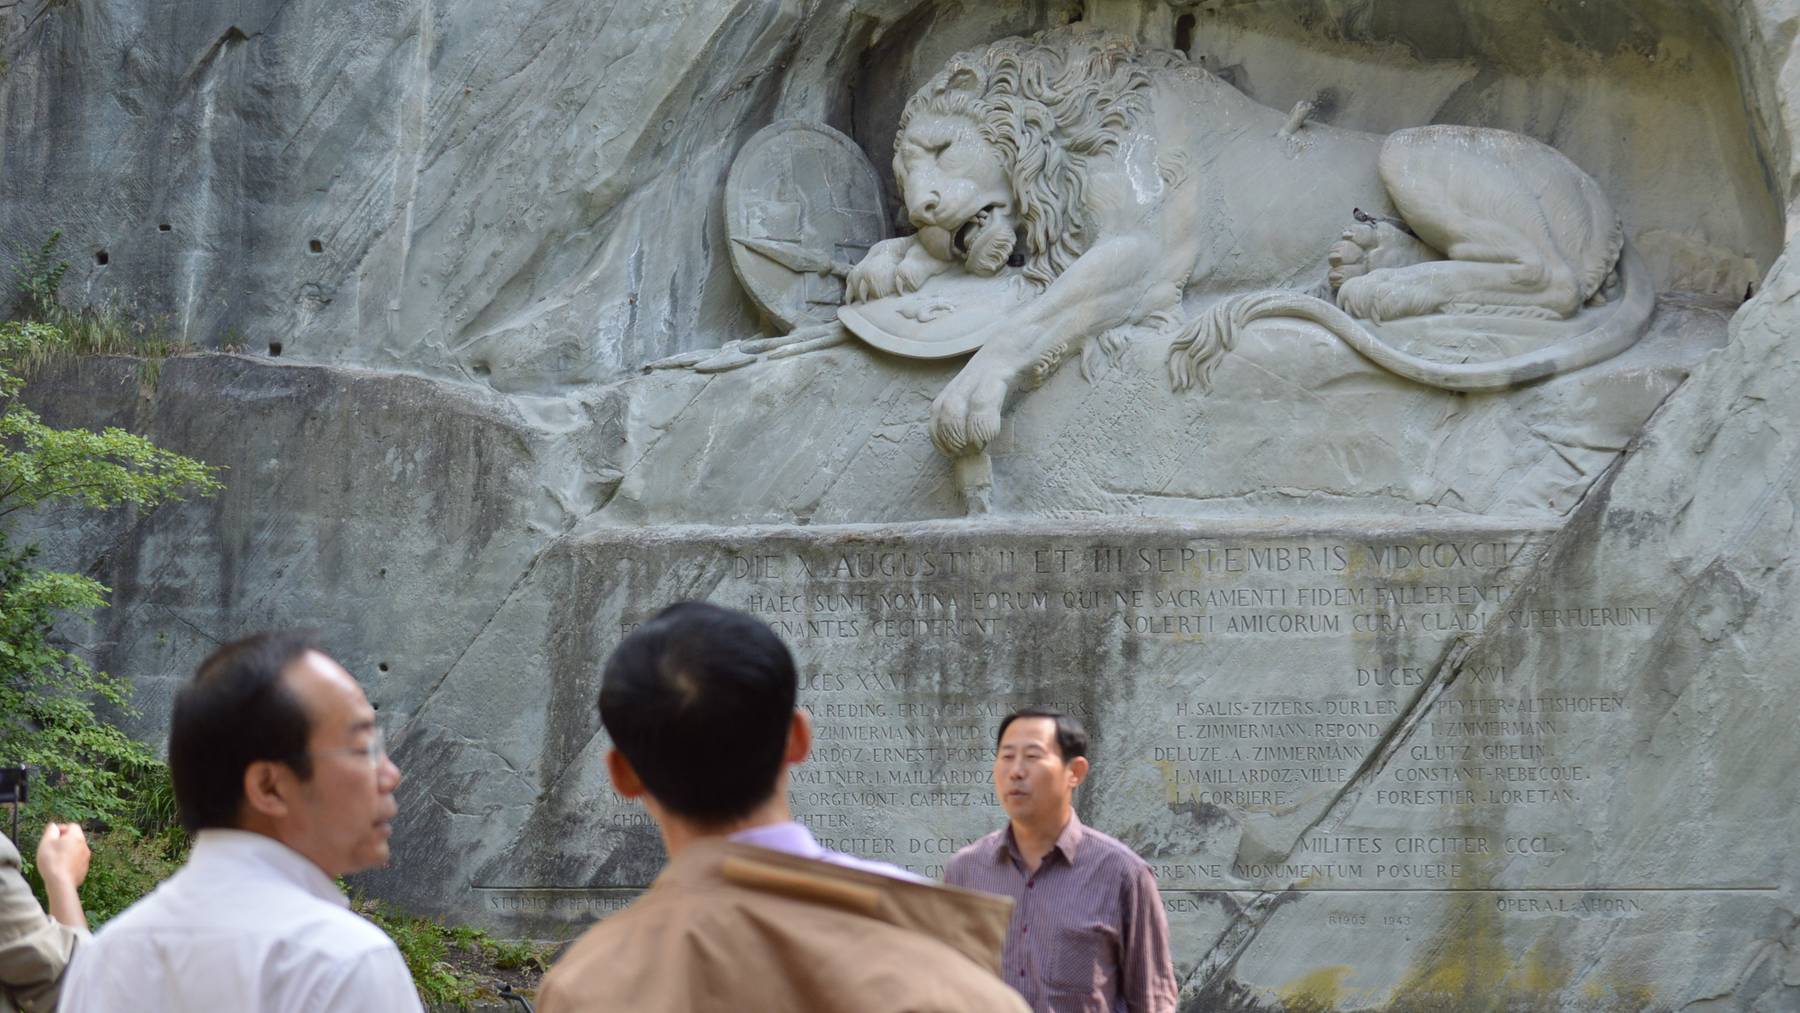 Löwendenkmal bleibt weiterhin gratis